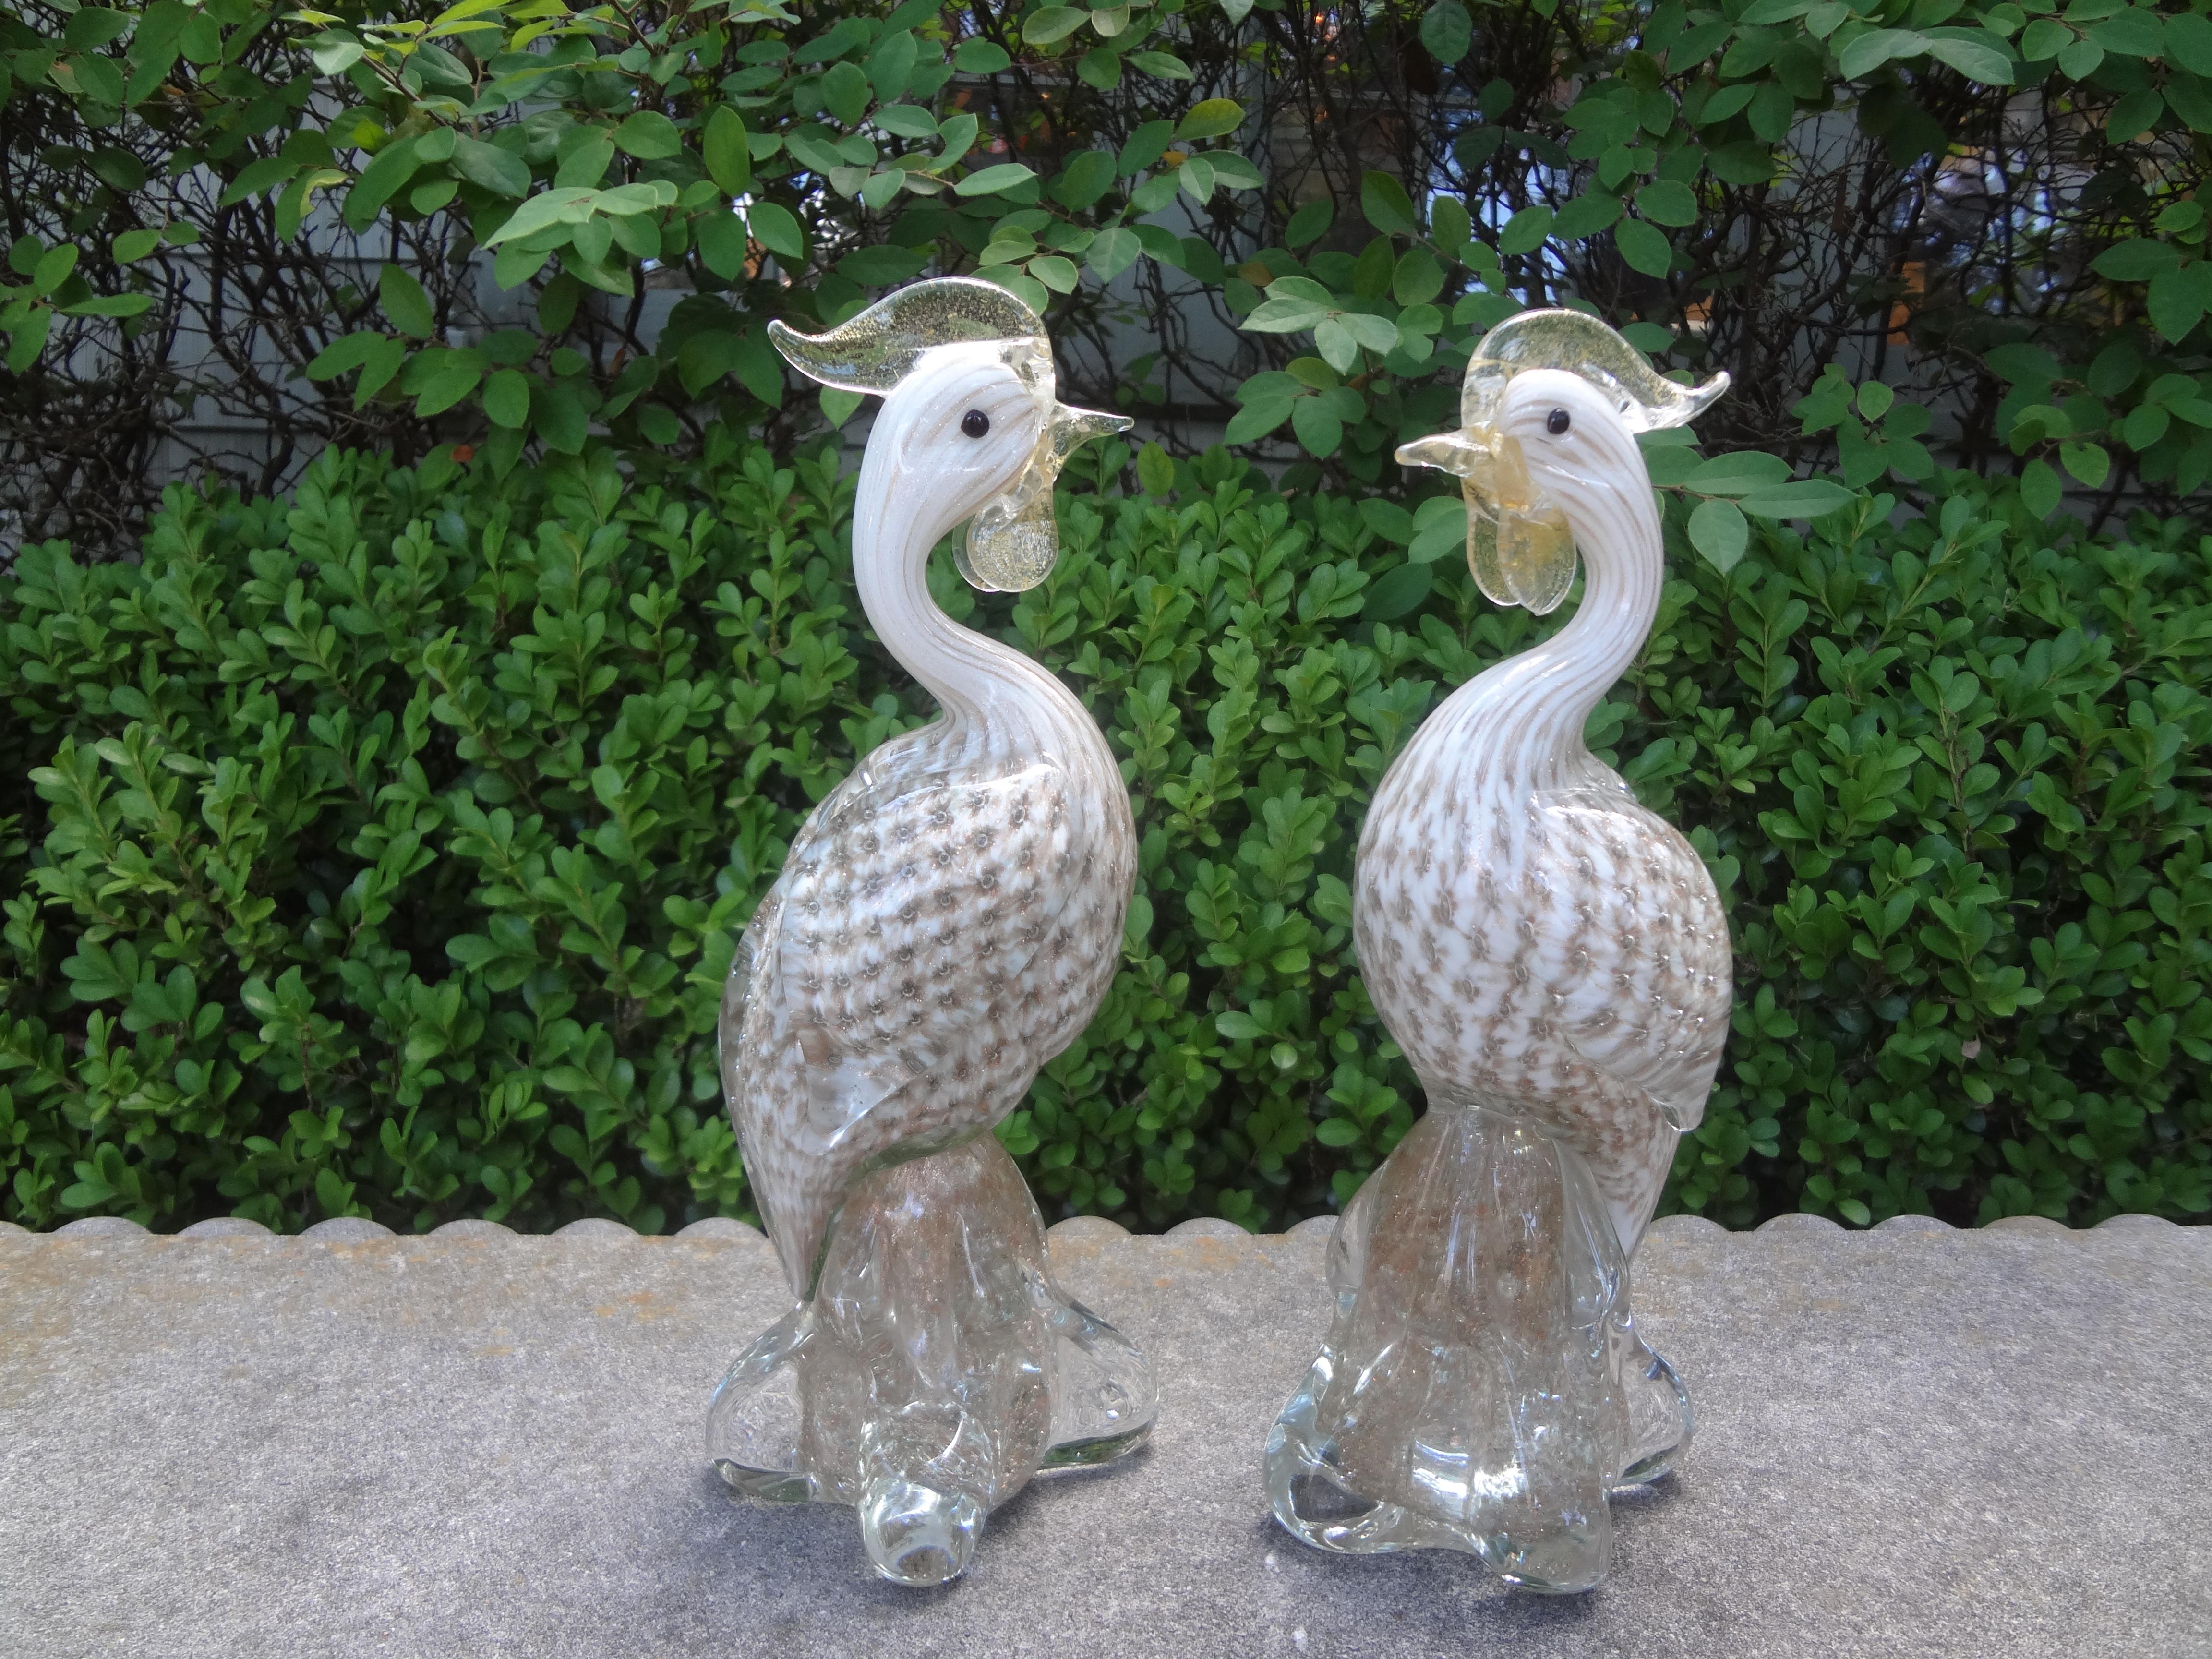 Paire d'oiseaux en verre de Murano attribuée à Archimede Seguso. Cette belle paire d'oiseaux en verre soufflé de Murano datant des années 1970 est attribuée à Archimede Seguso (1909-1999), Italie.
Archimede Seguso est né sur l'île de Murano.